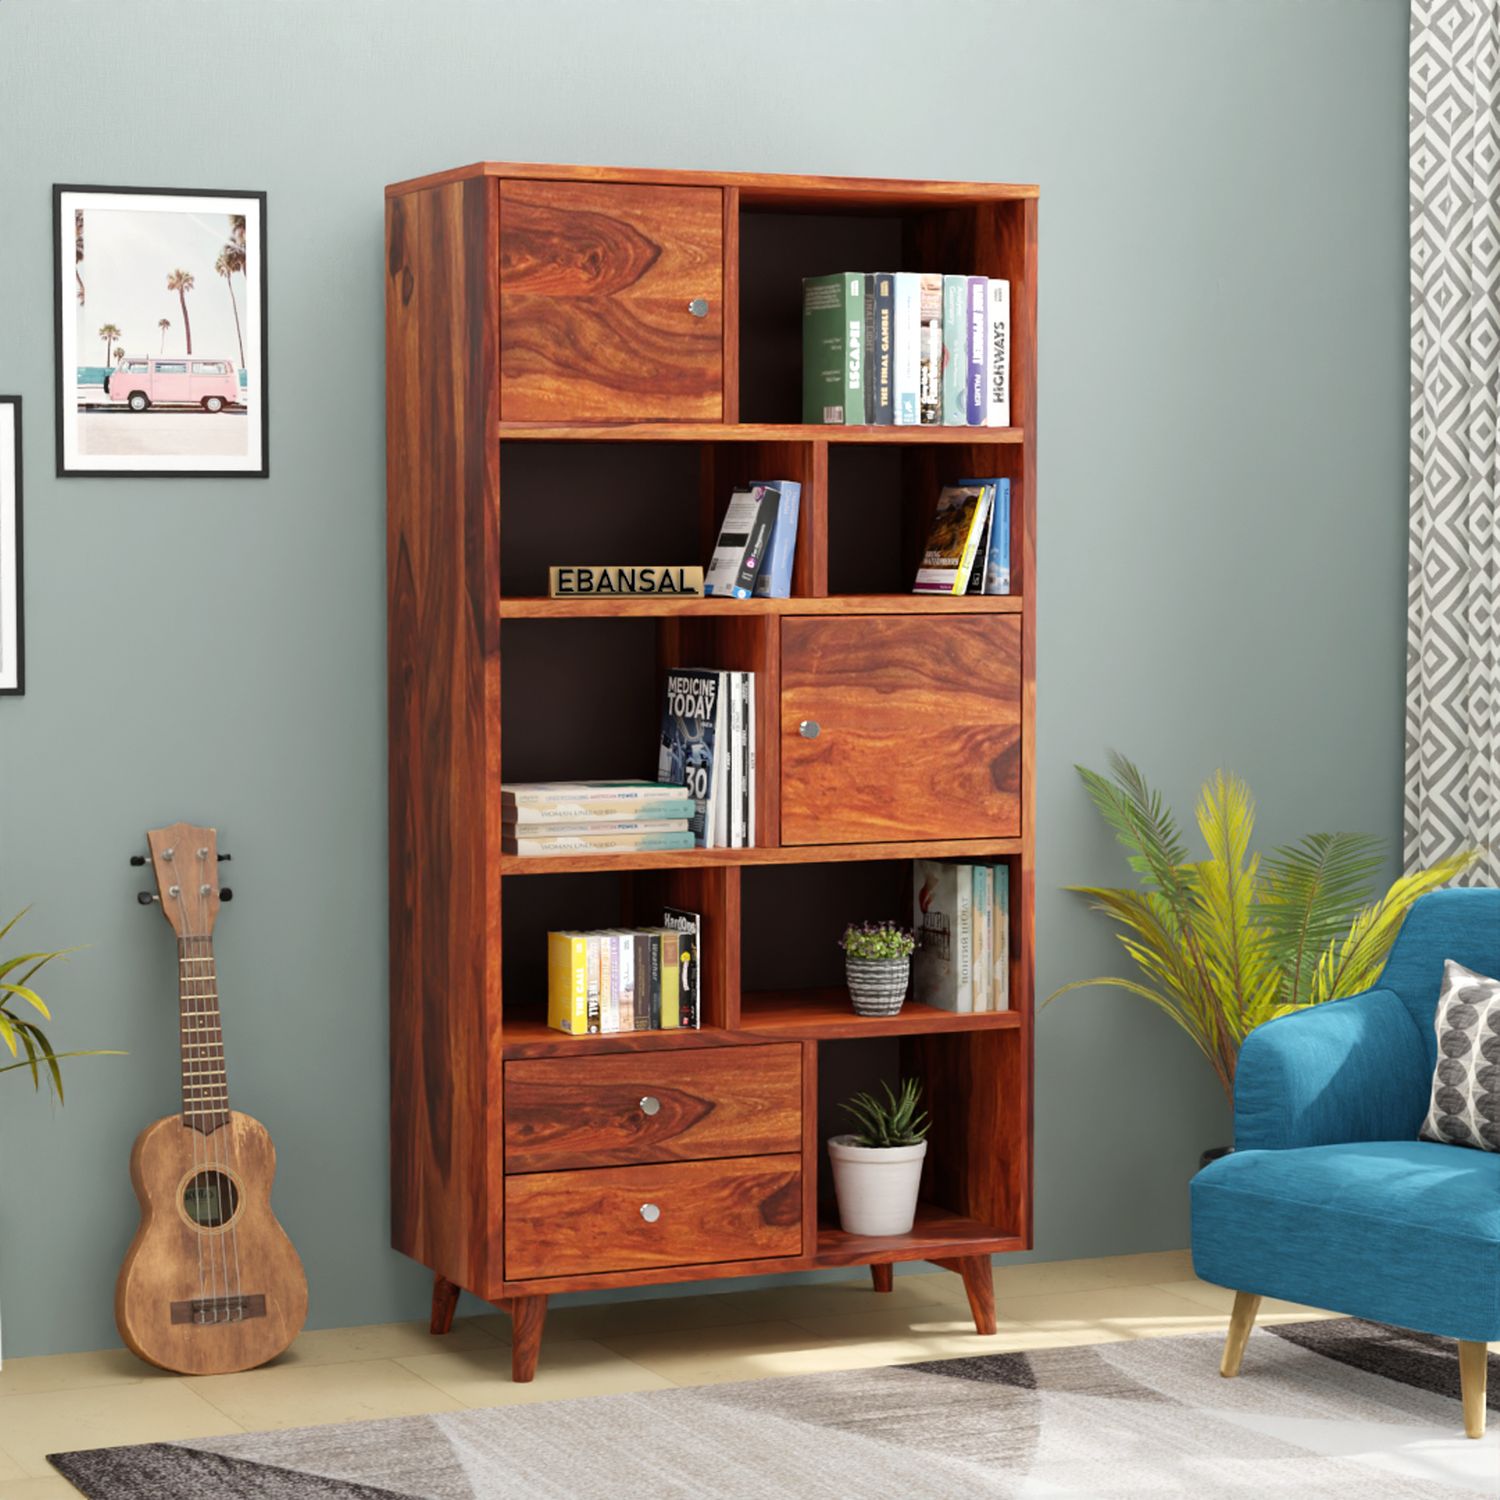 Befree Solid Sheesham Wood Bookshelf (Natural Finish)